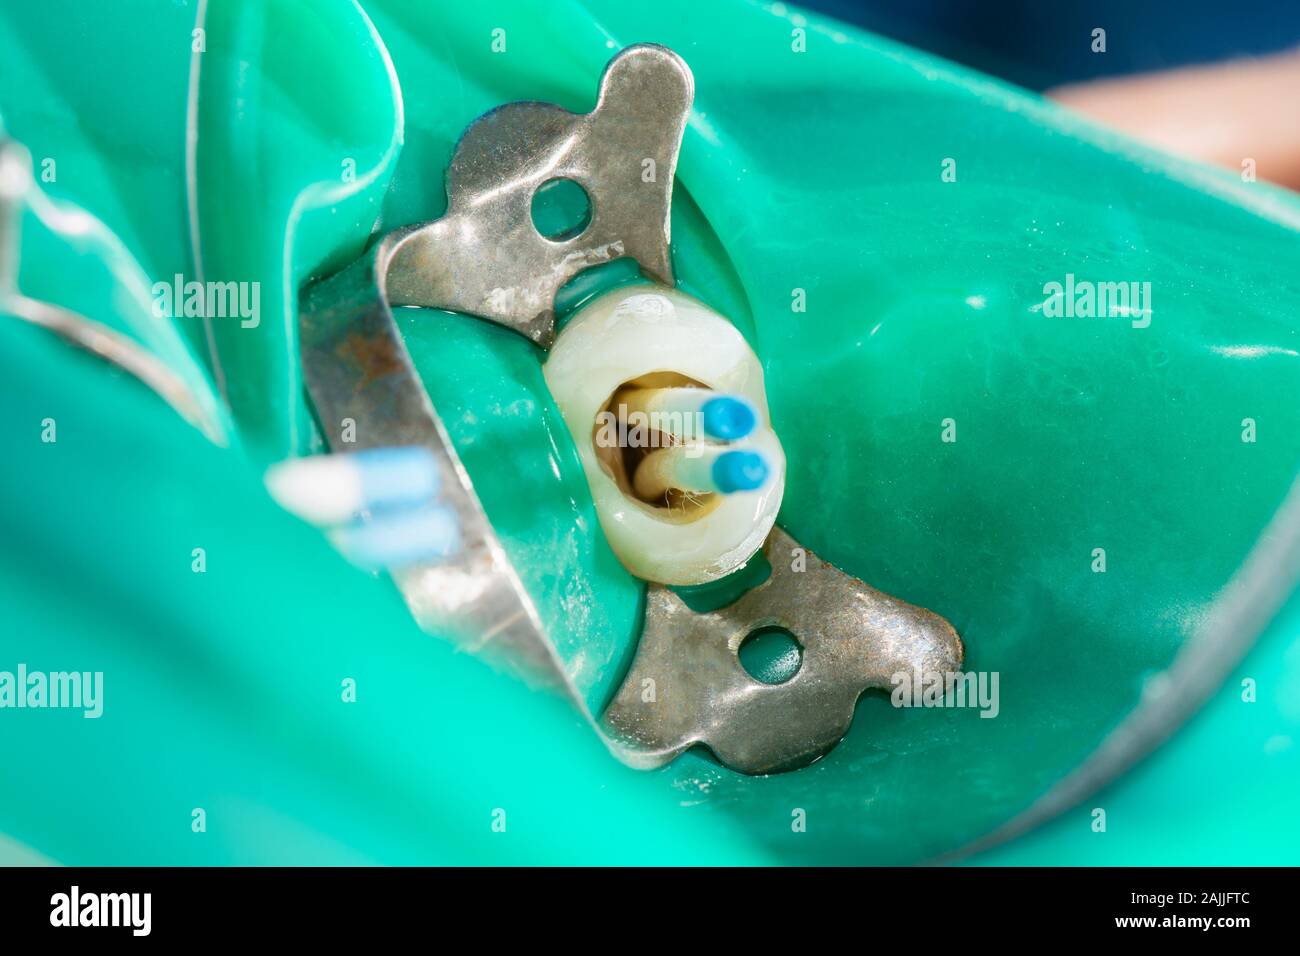 Photo d'un traitement endodontique de canaux dentaires dans la molaire inférieure molaire dent permanente avec fichier d'endodontie avec localisateur d'apex, dent avec pince Banque D'Images